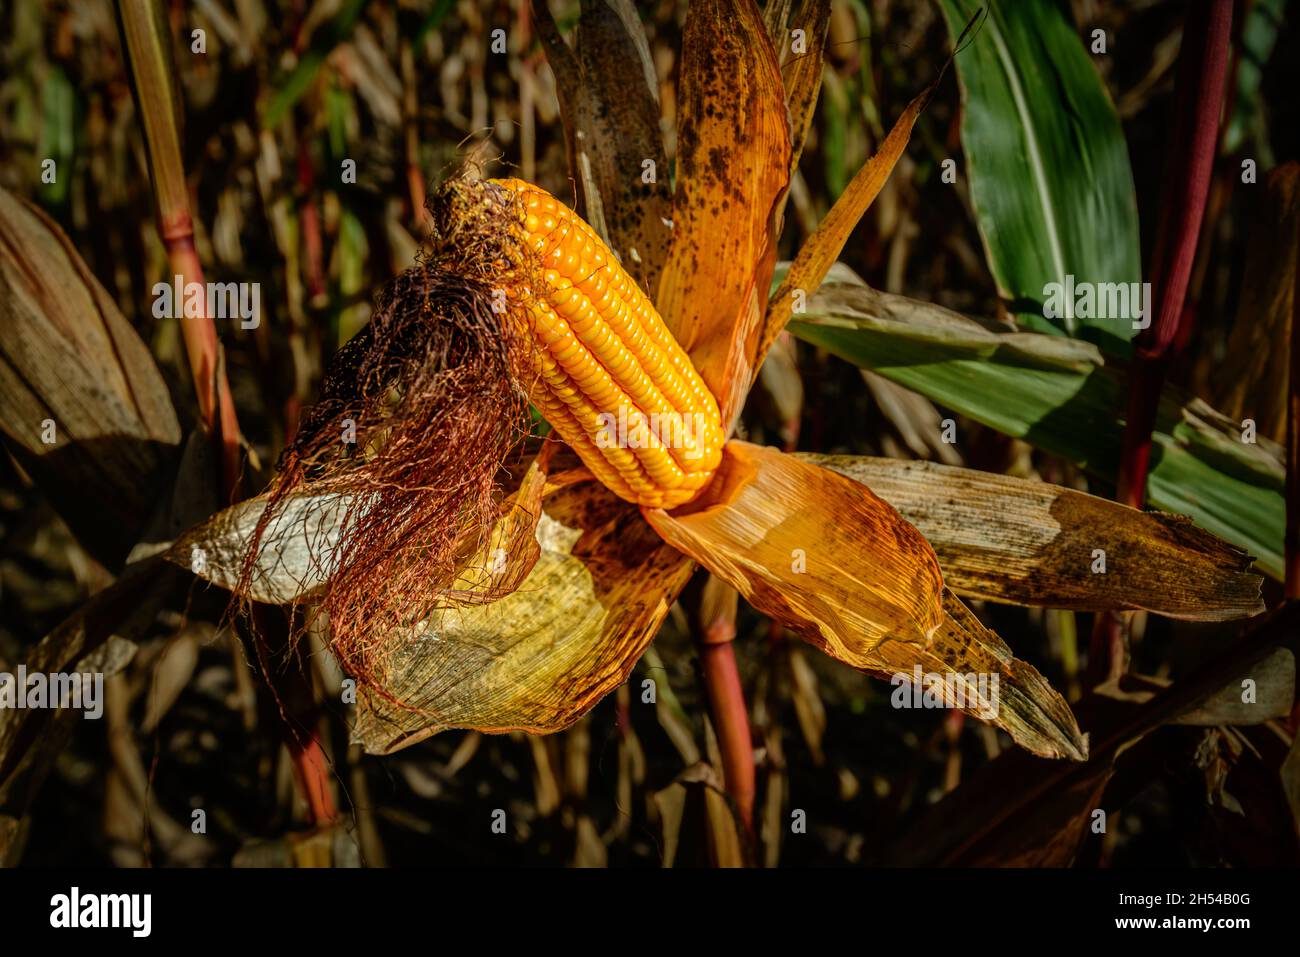 Beautiful autumn colors on a ripe corn cob Stock Photo